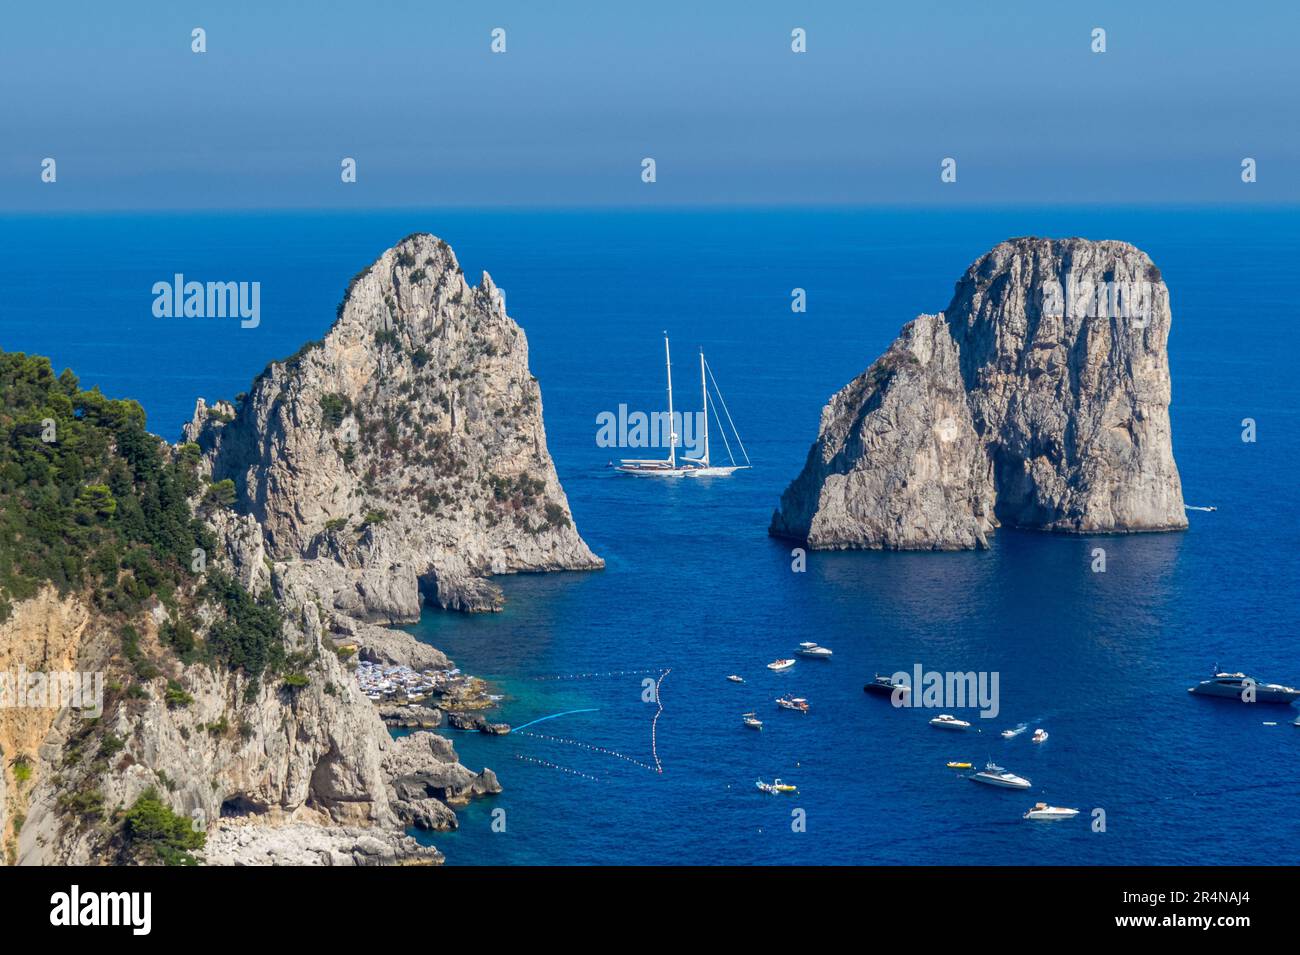 Los Faraglioni di Capri, los acantilados de Capri, son una serie de tres pequeños islotes. Barcos navegando a su alrededor, isla de Capri, Italia Stock Photo